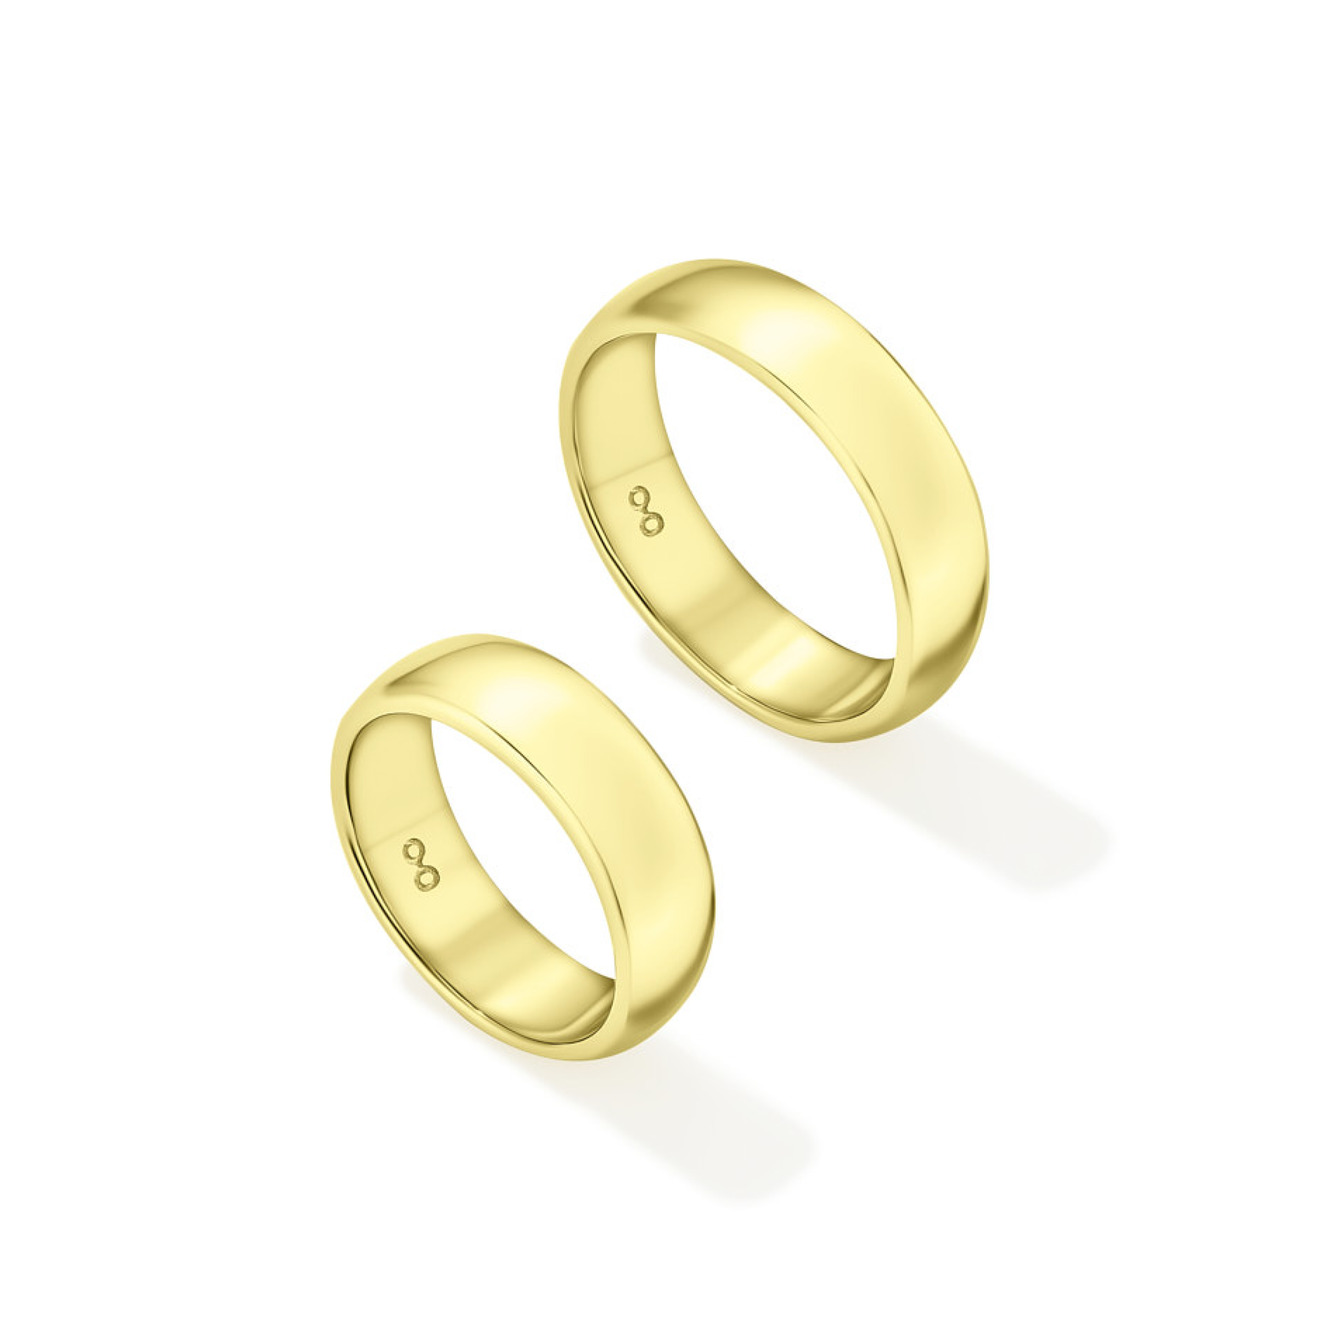 Avgvst Фламандское среднее кольцо из лимонного золота avgvst тини кольцо искра из золота